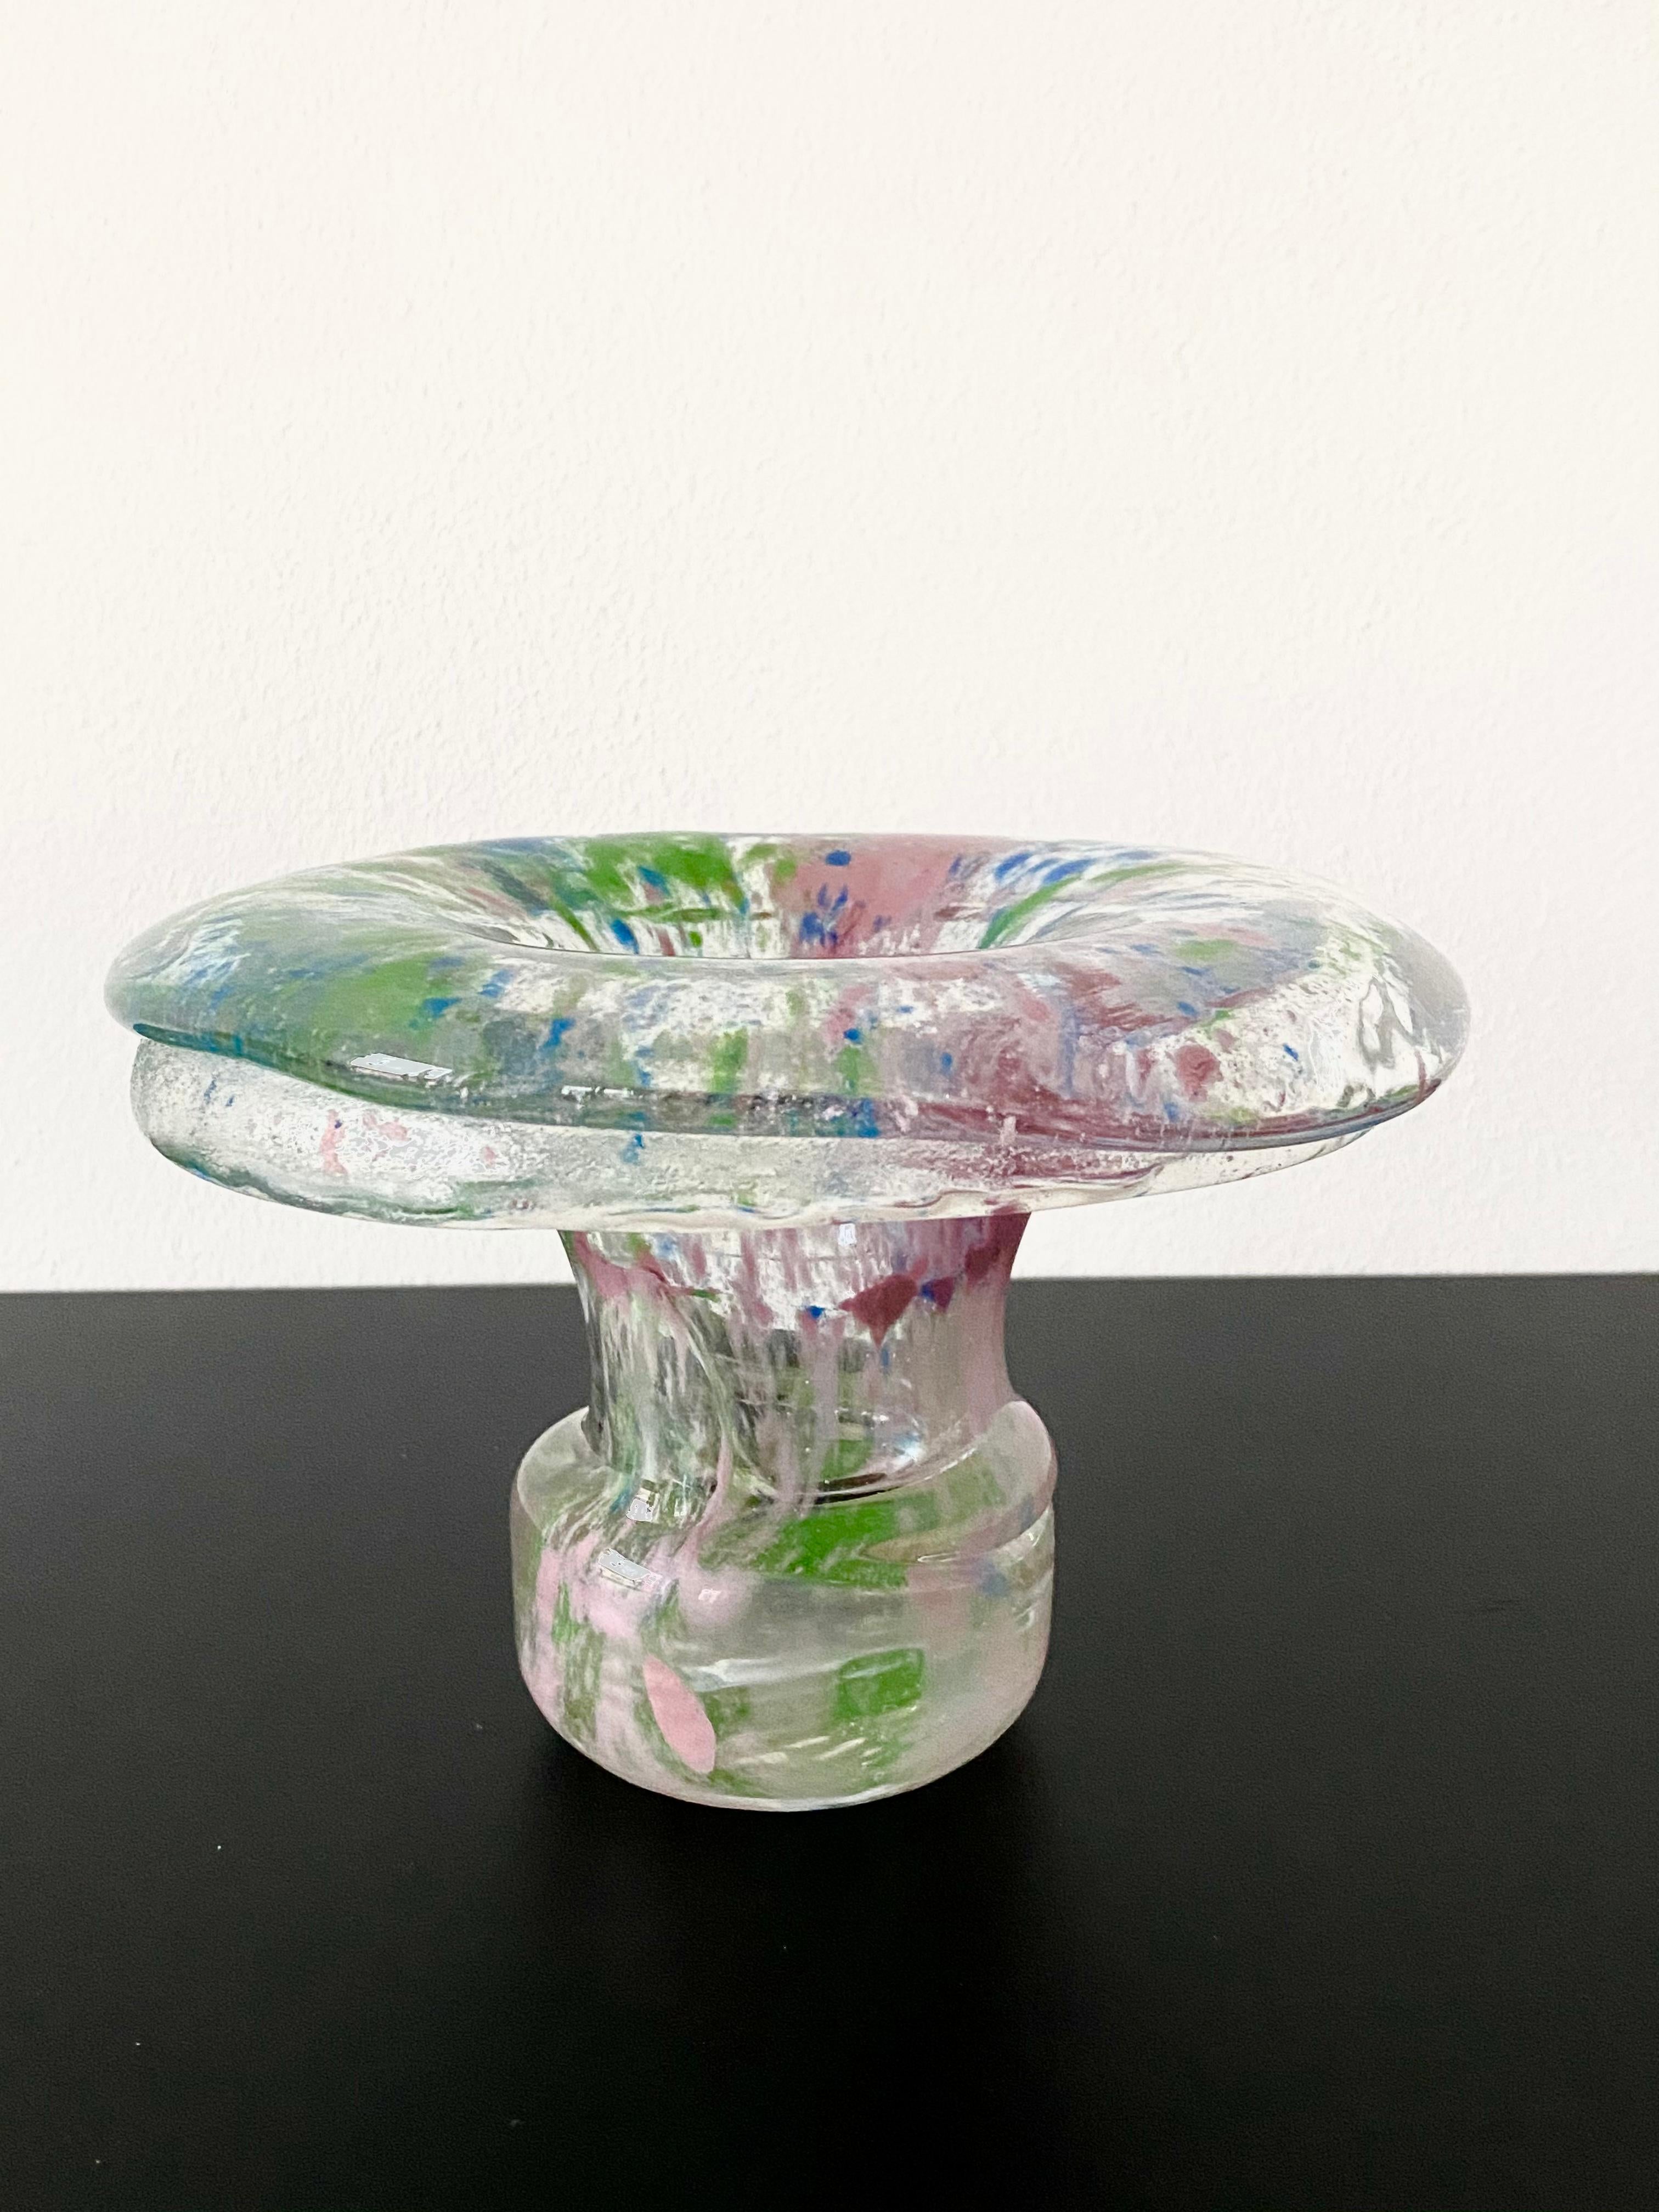 Insolite vase massif en verre multicolore, conçu par Helena Tynell. La pièce est en très bon état et porte l'autocollant du fabricant ainsi qu'une signature sur le dessous.
 